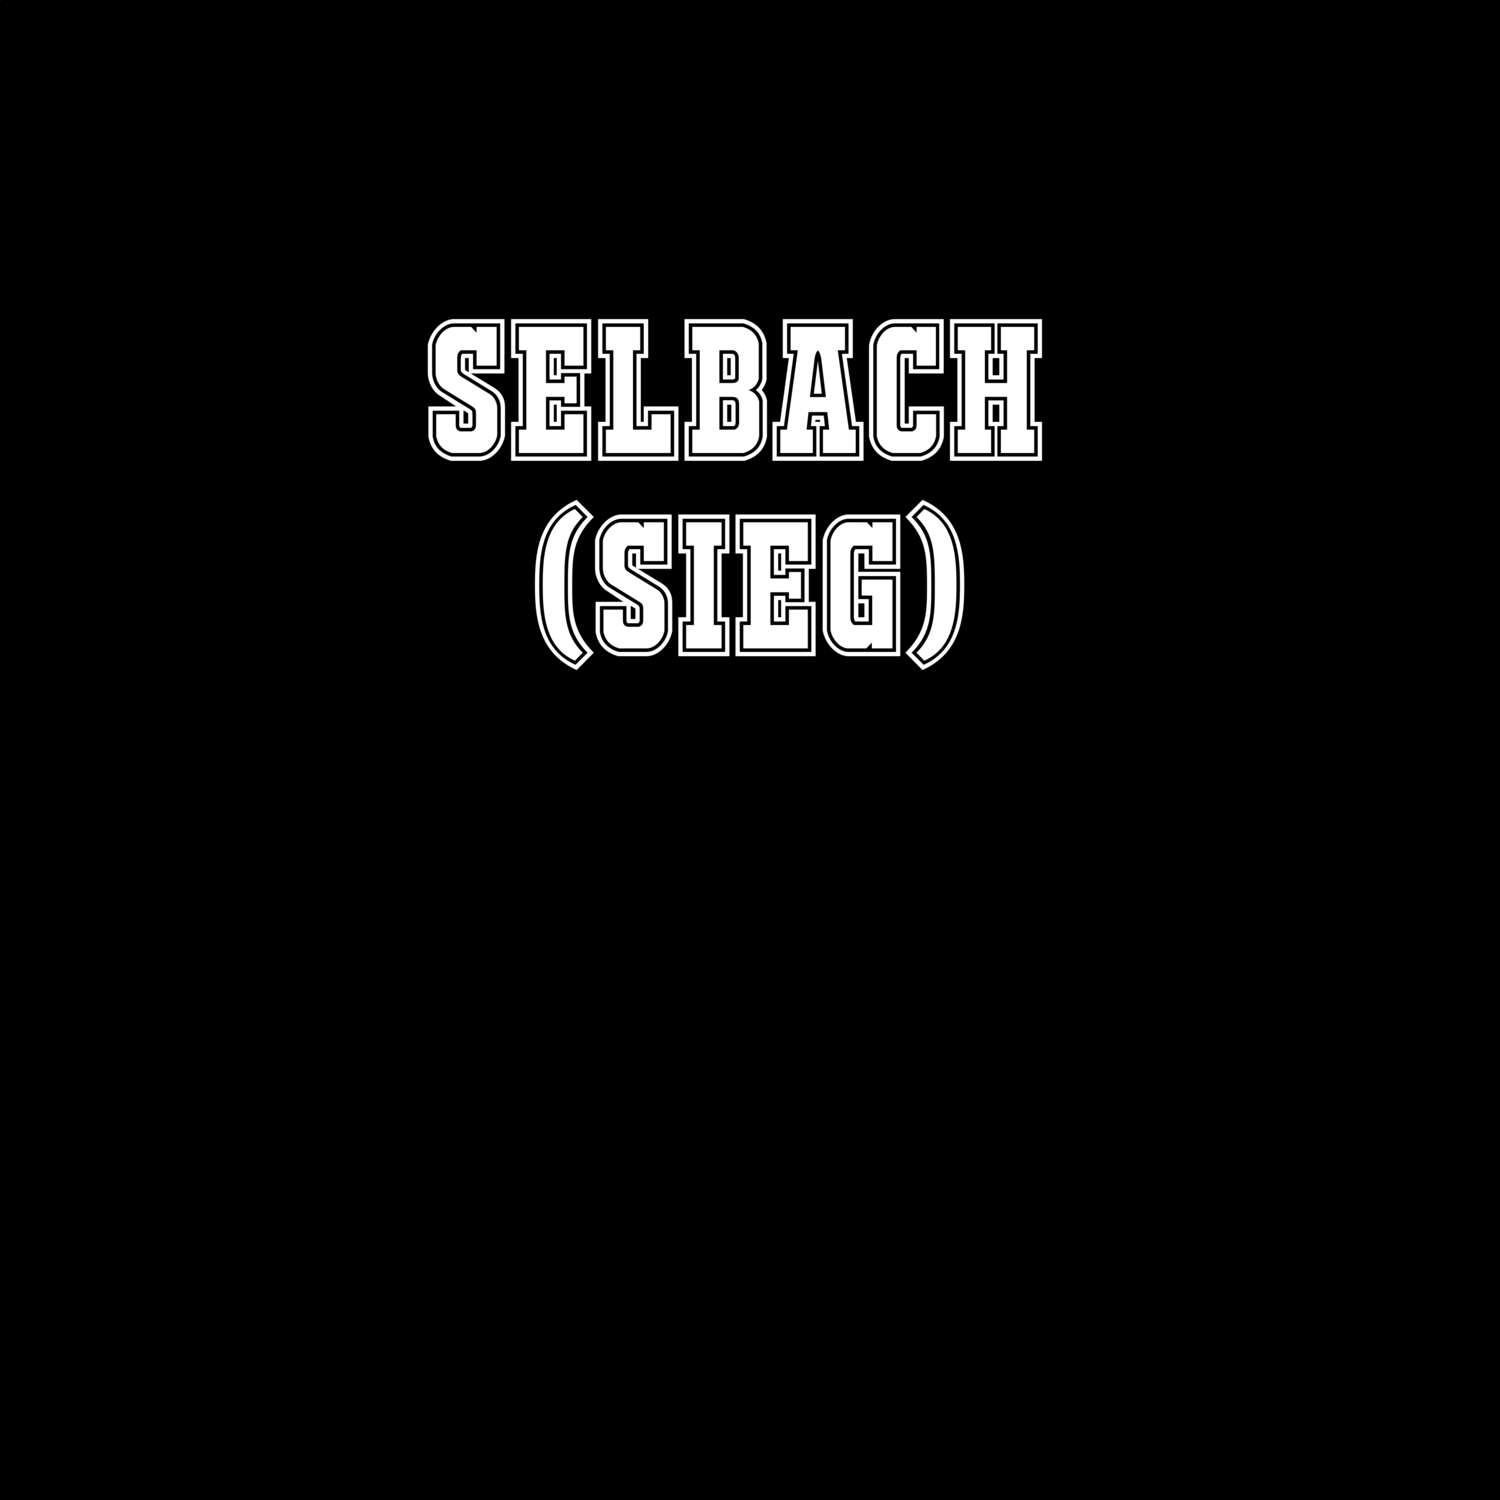 Selbach (Sieg) T-Shirt »Classic«